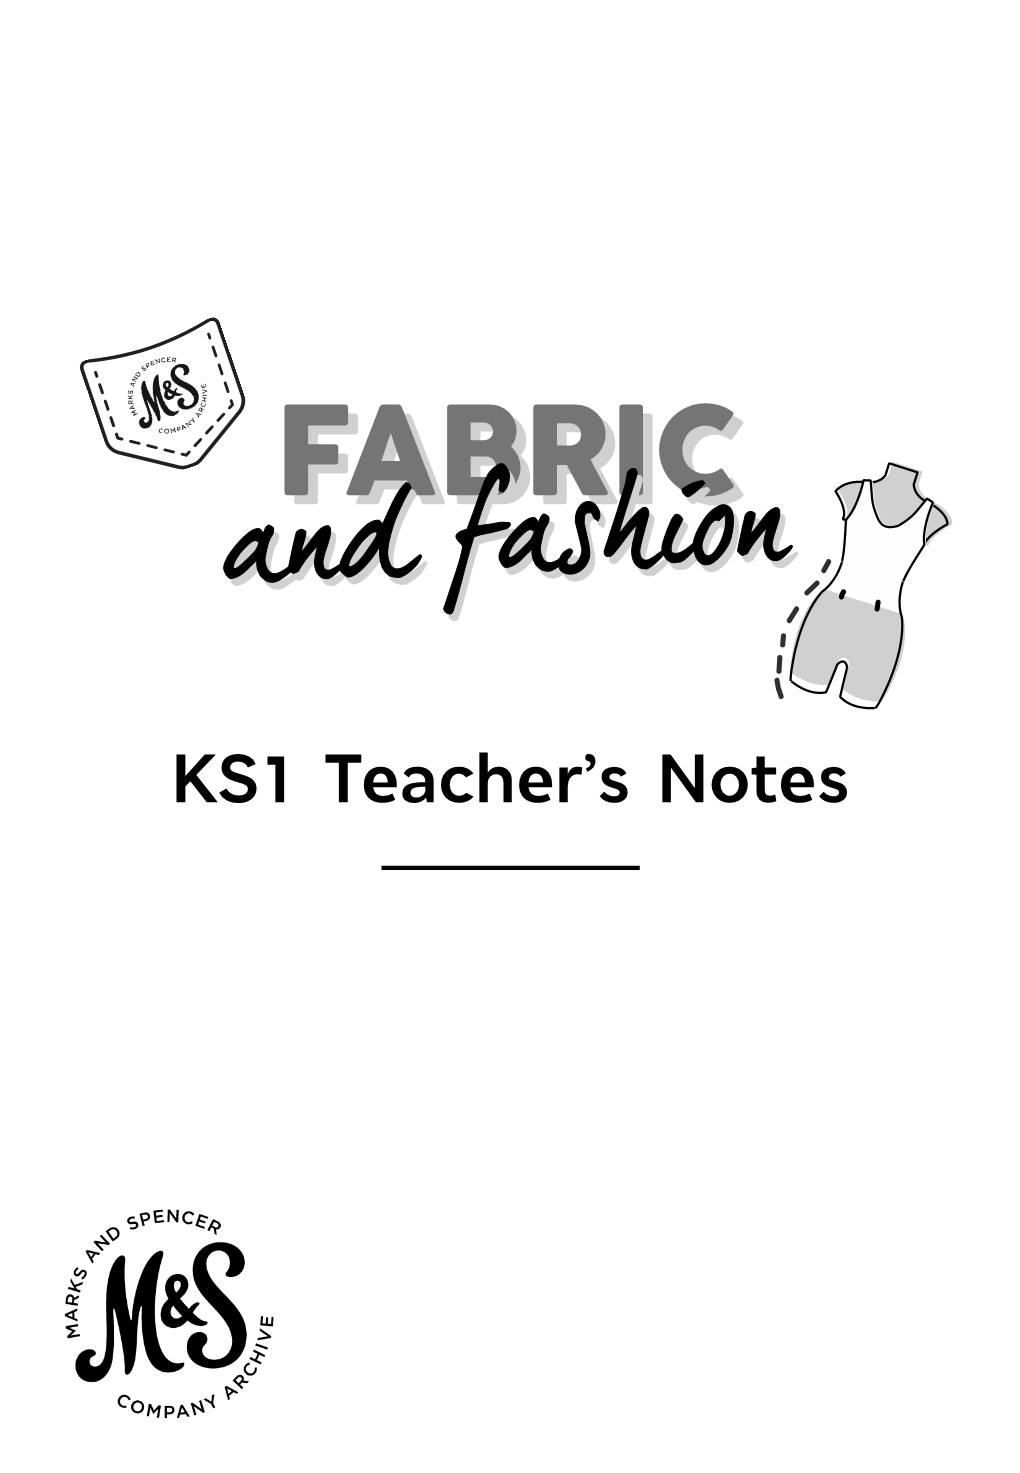 HERE KS1 Teacher's Notes